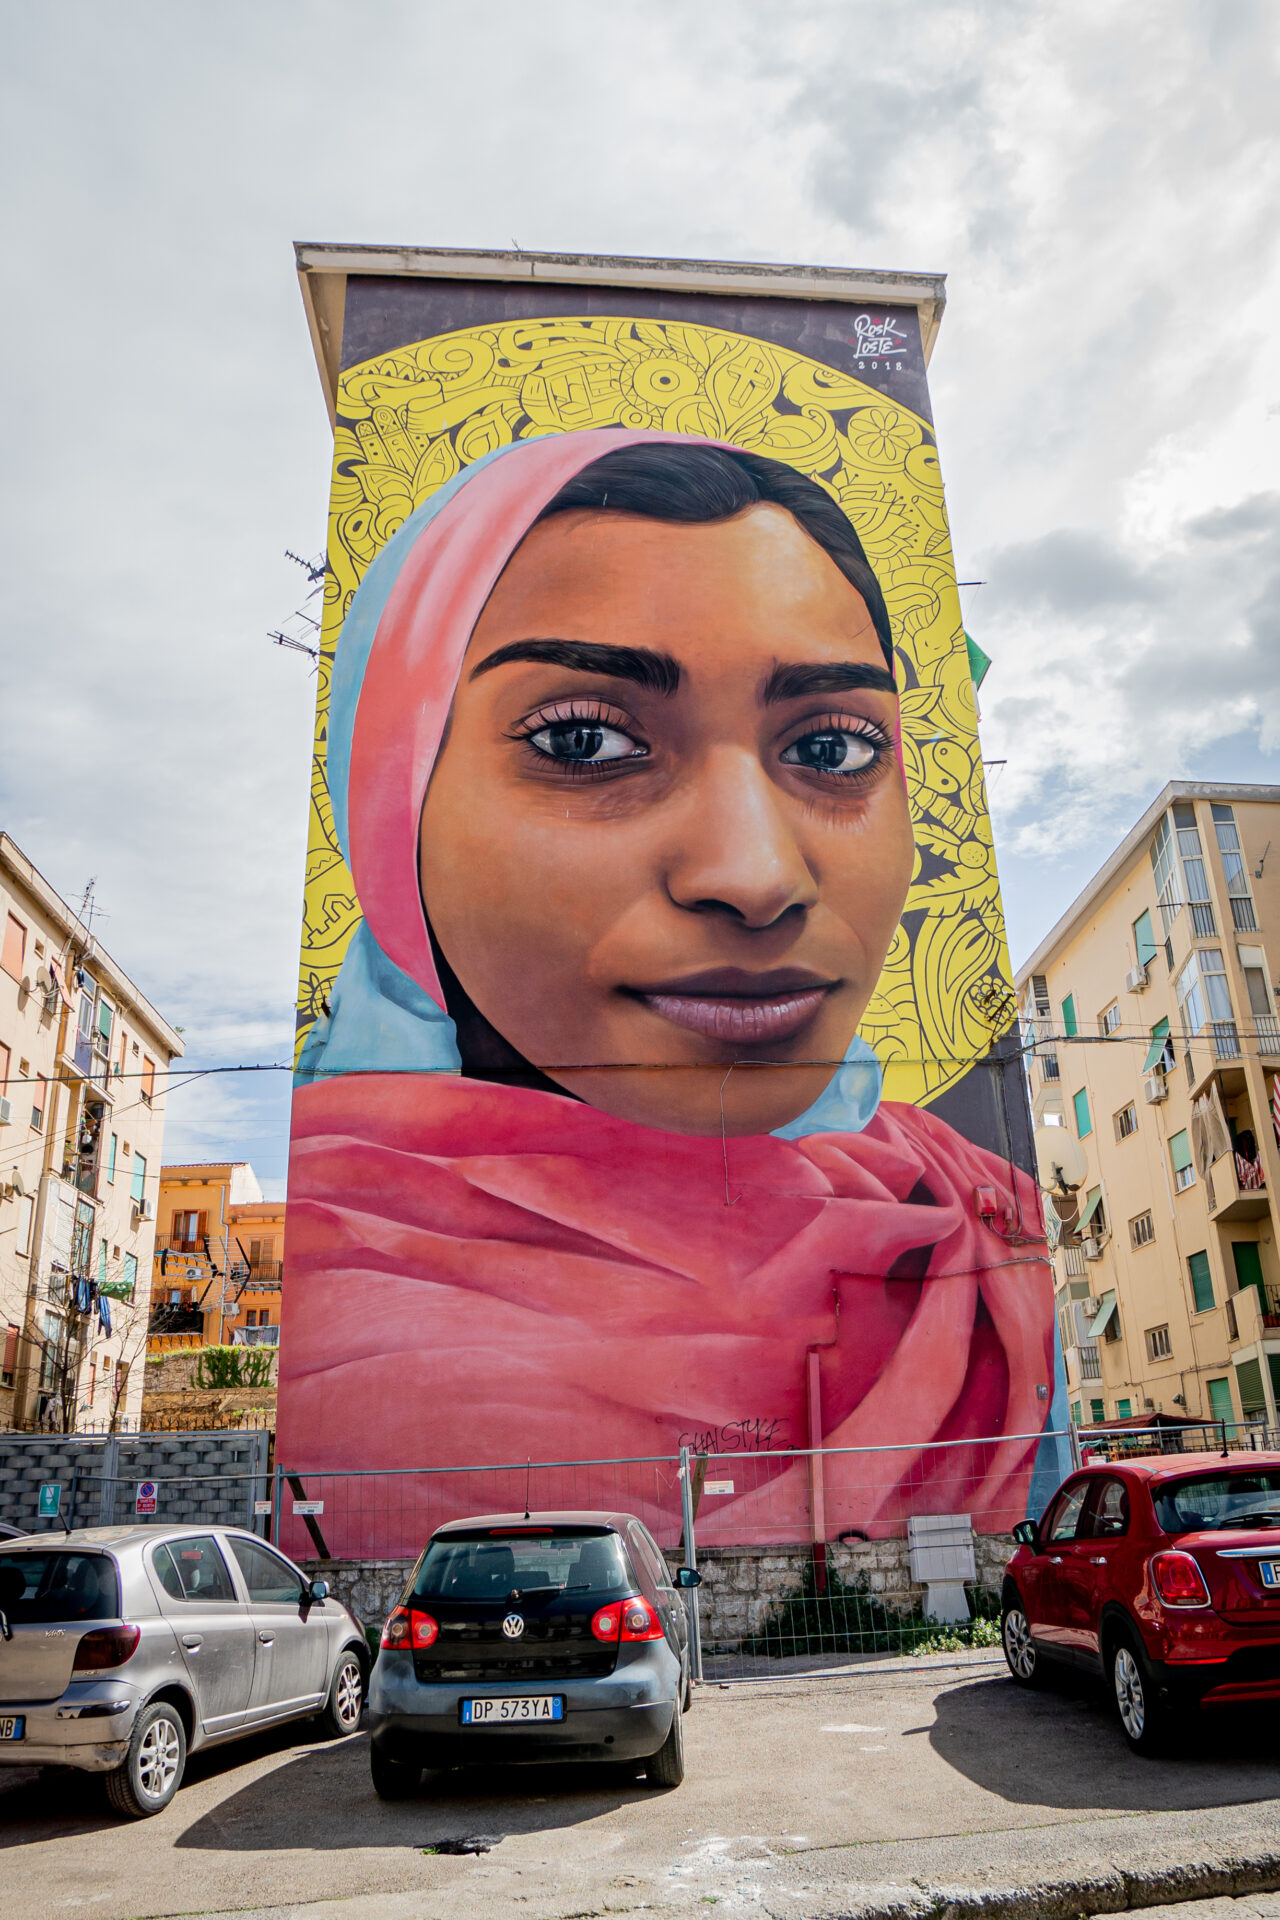 Arte callejero en Palermo